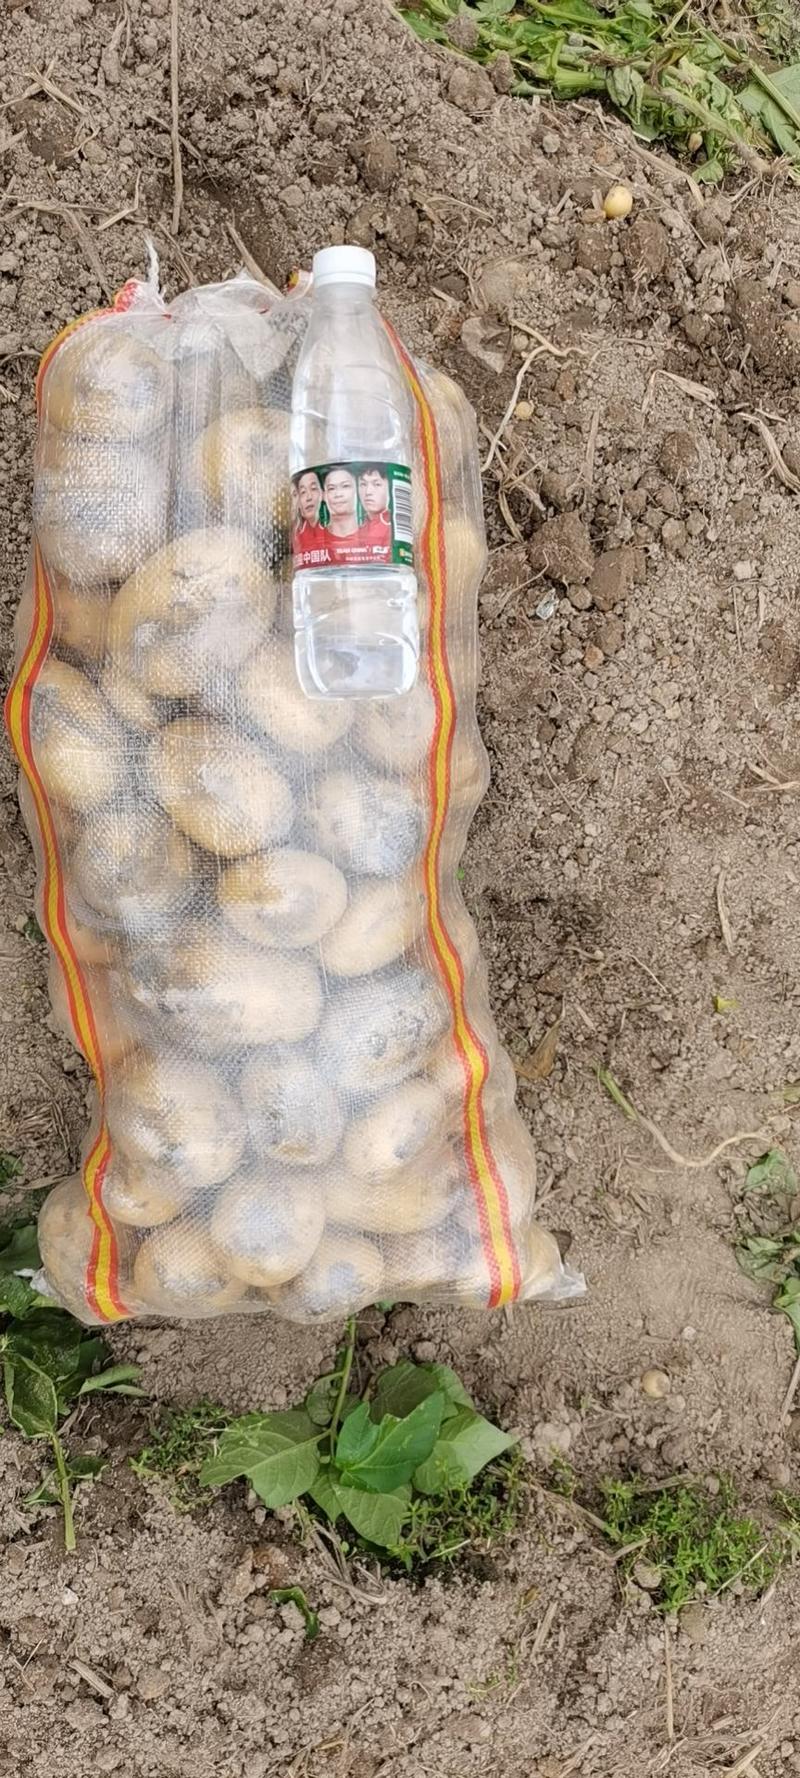 黄心土豆常年供应荷兰十五土豆一手货源